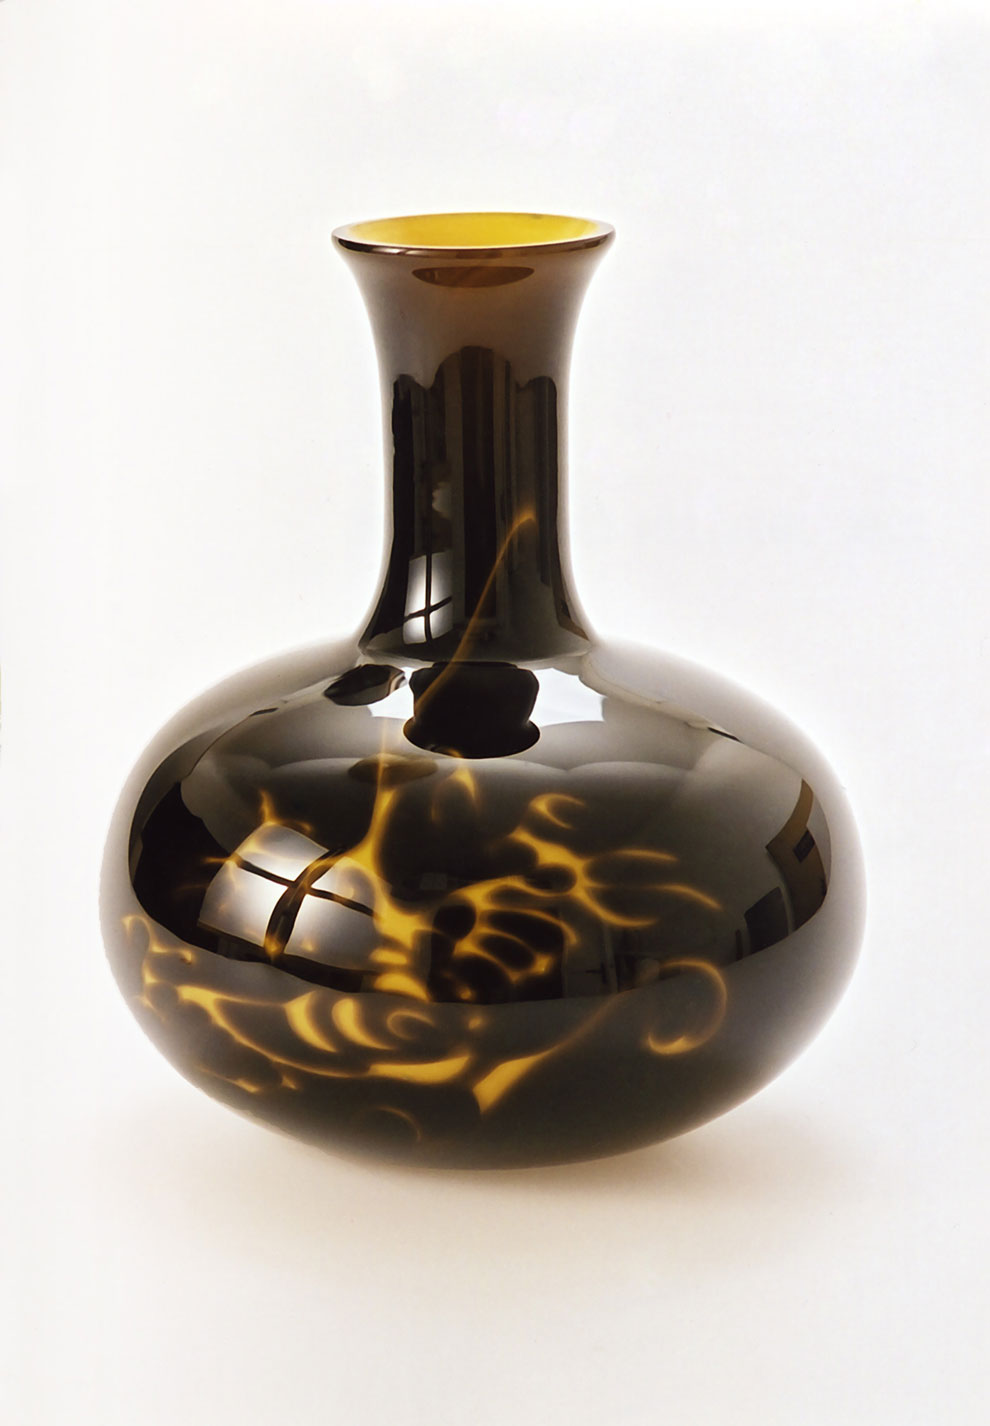 vase by alexandra lindhén, university of kalmar, sweden 2007